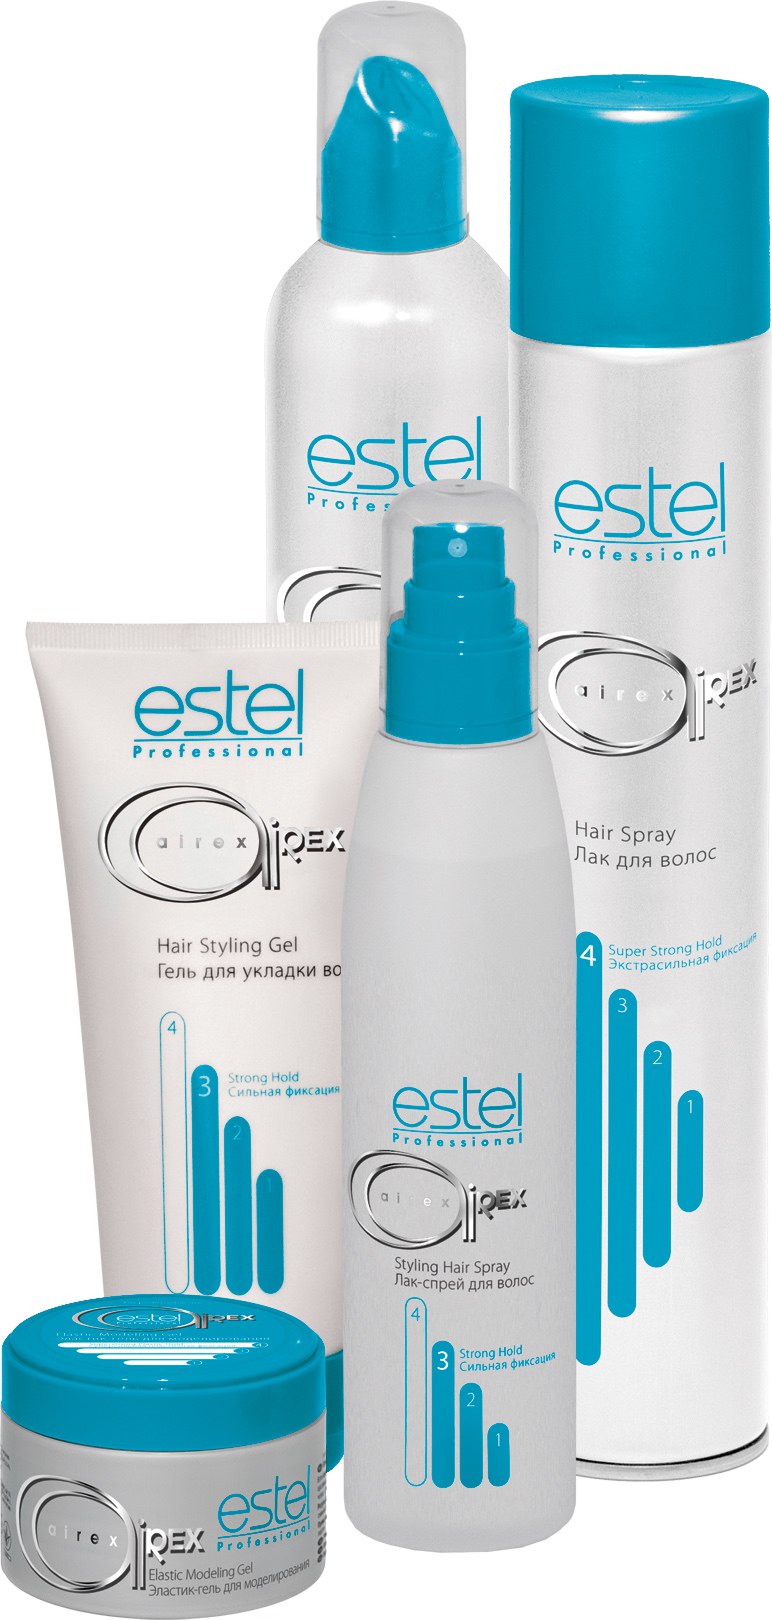 Профессиональная линия для укладки волос AIREX от ESTEL (Лак, Мусс, Гель, Воск, Спрей)